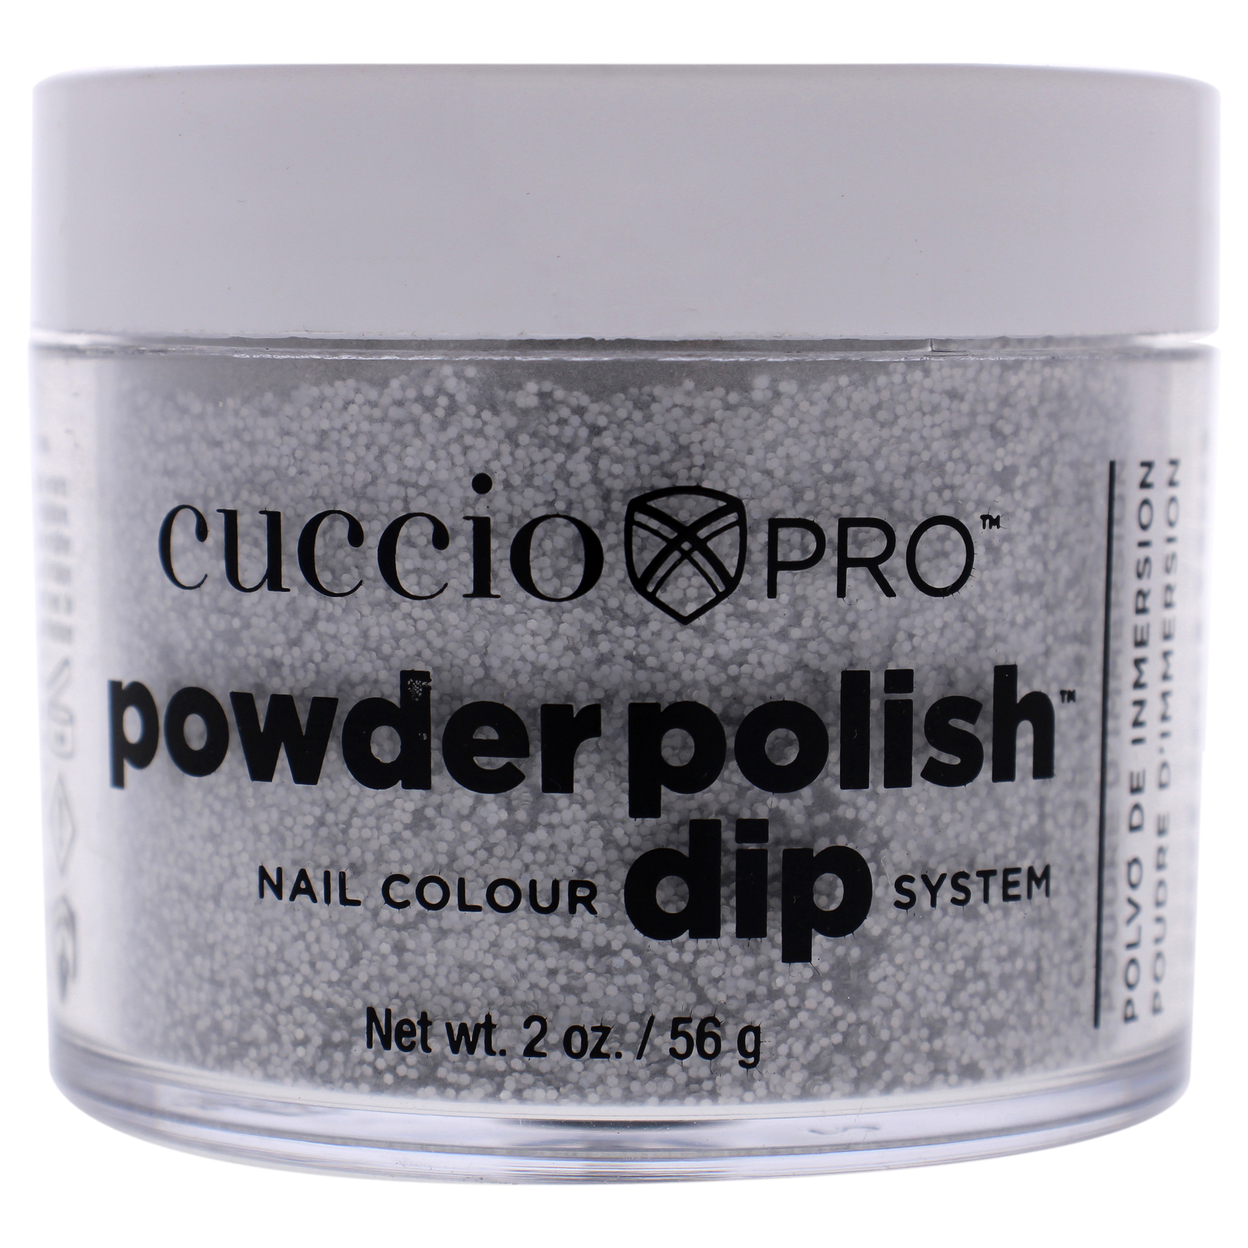 Cuccio Colour Pro Powder Polish Nail Colour Dip System - Deep Silver Glitter Nail Powder 1.6 Oz